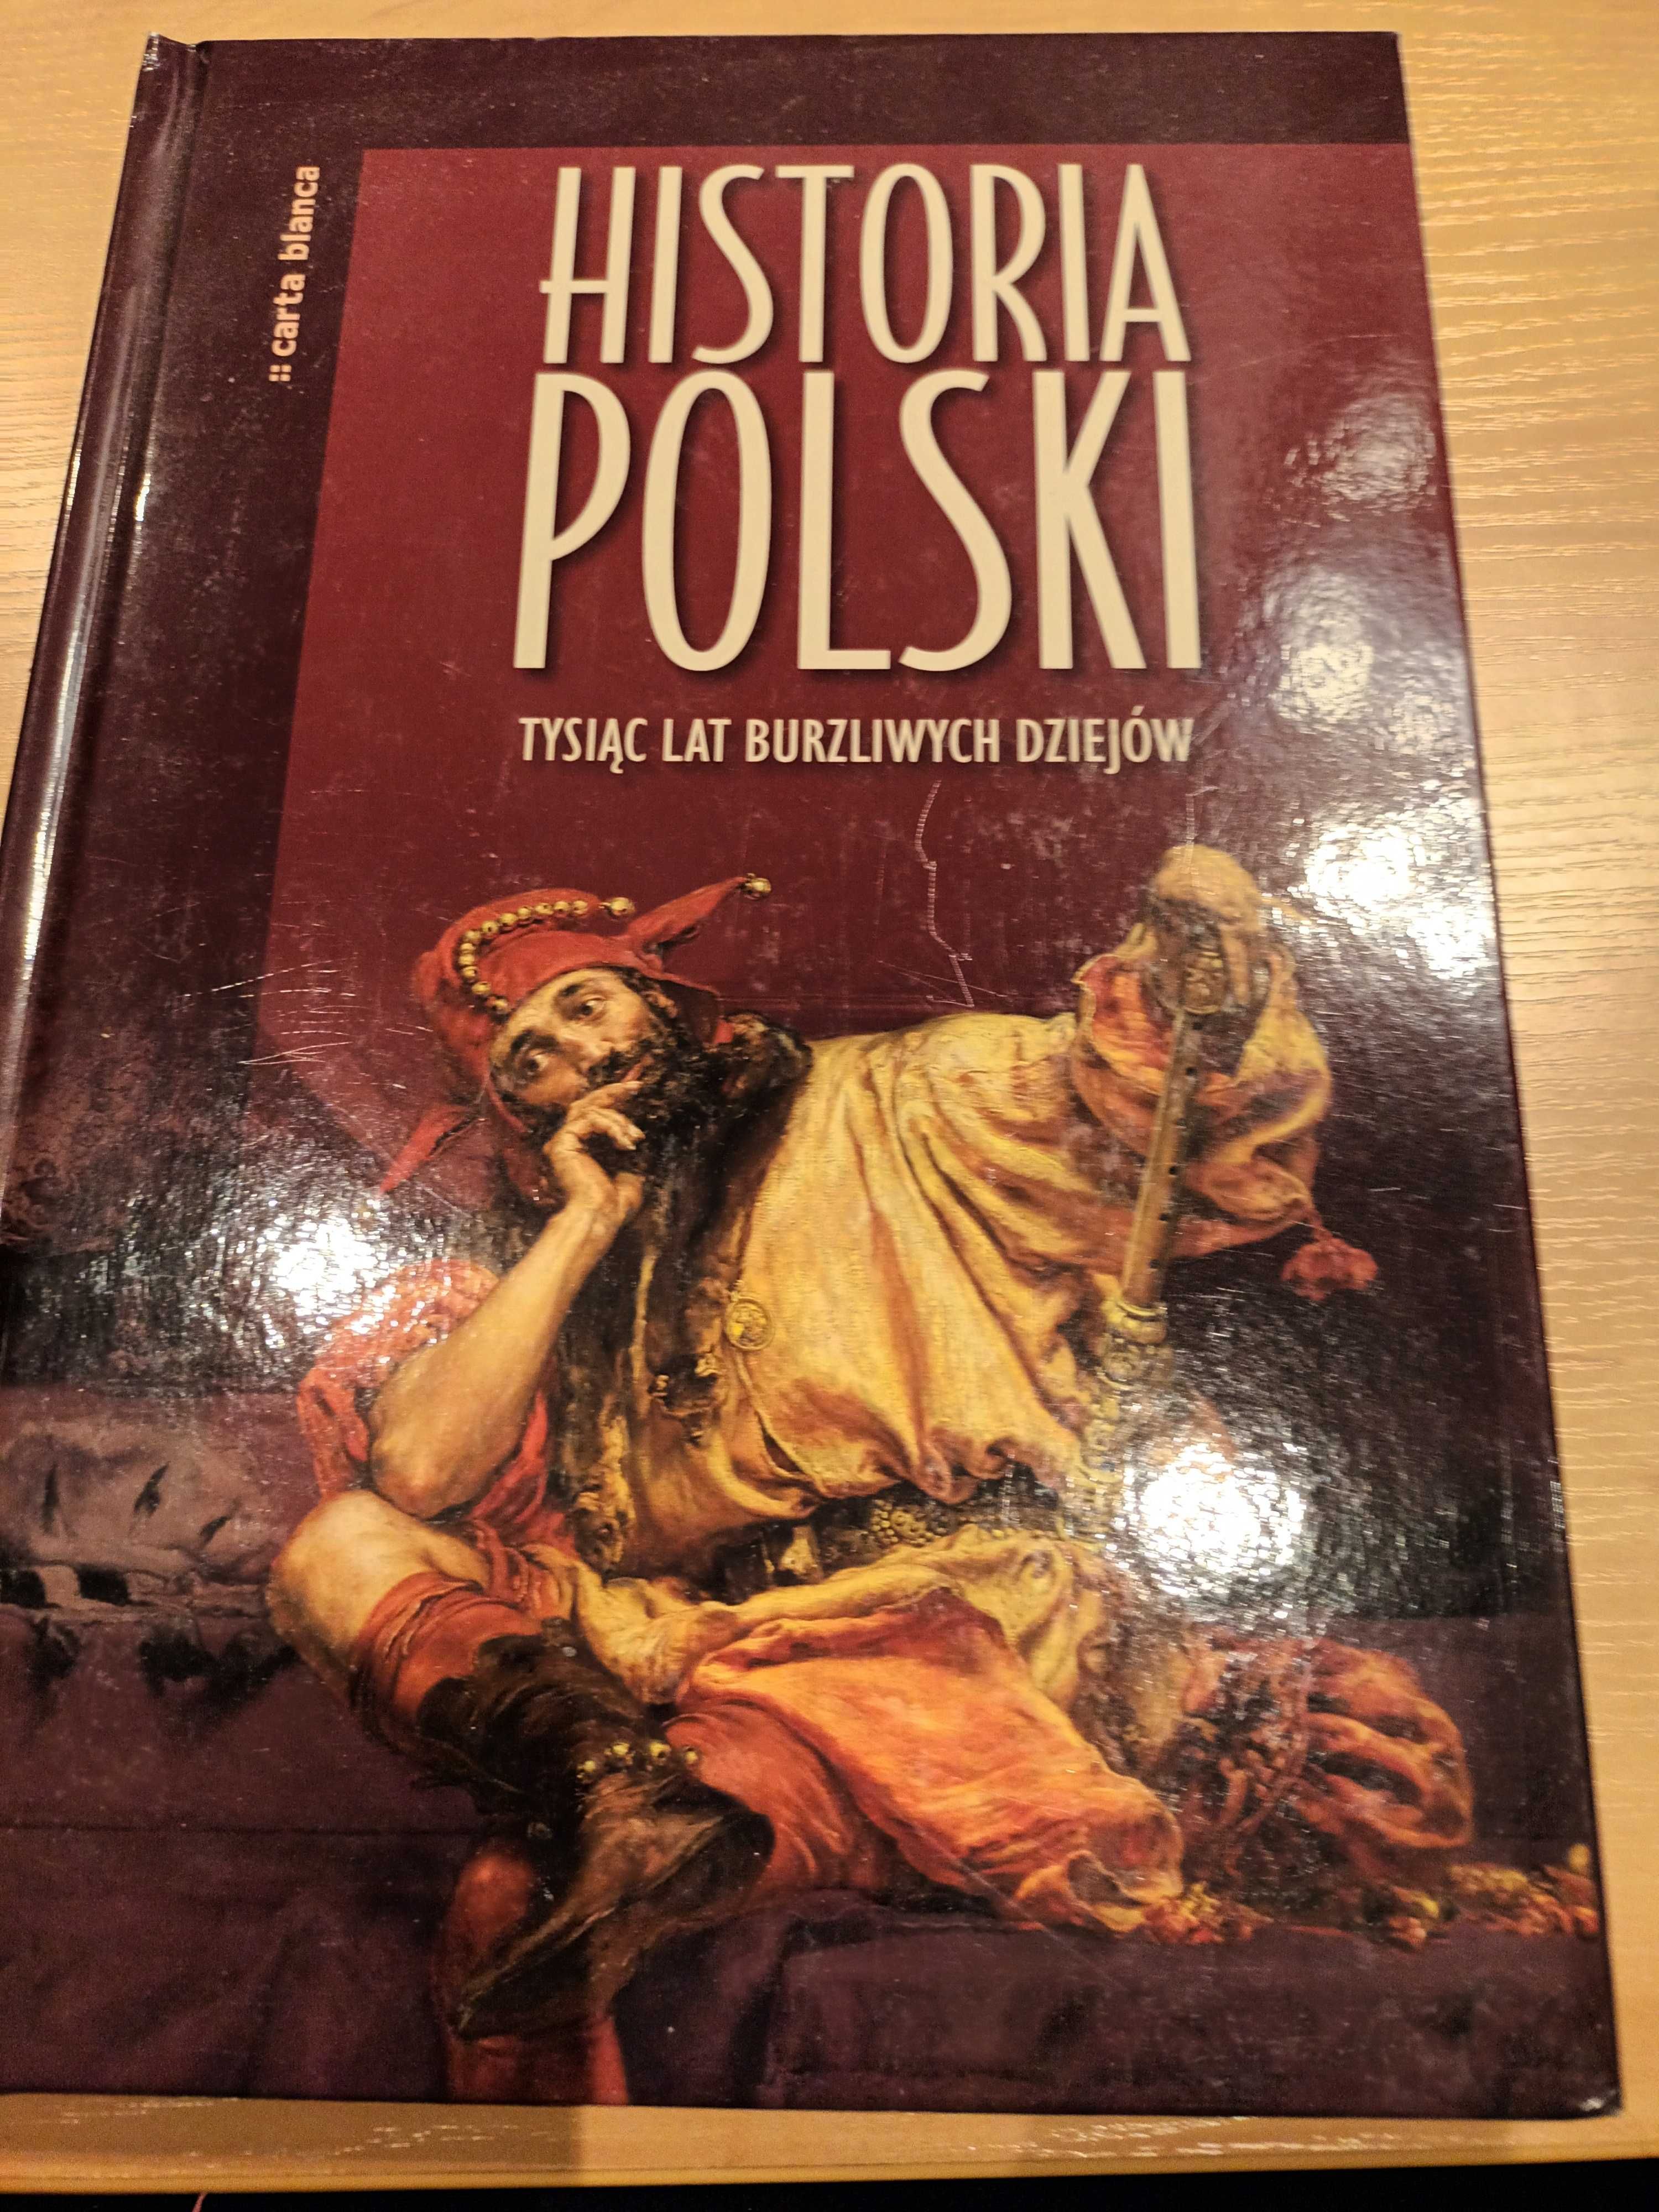 Historia Polski. Tysiąc lat burzliwych dziejów.